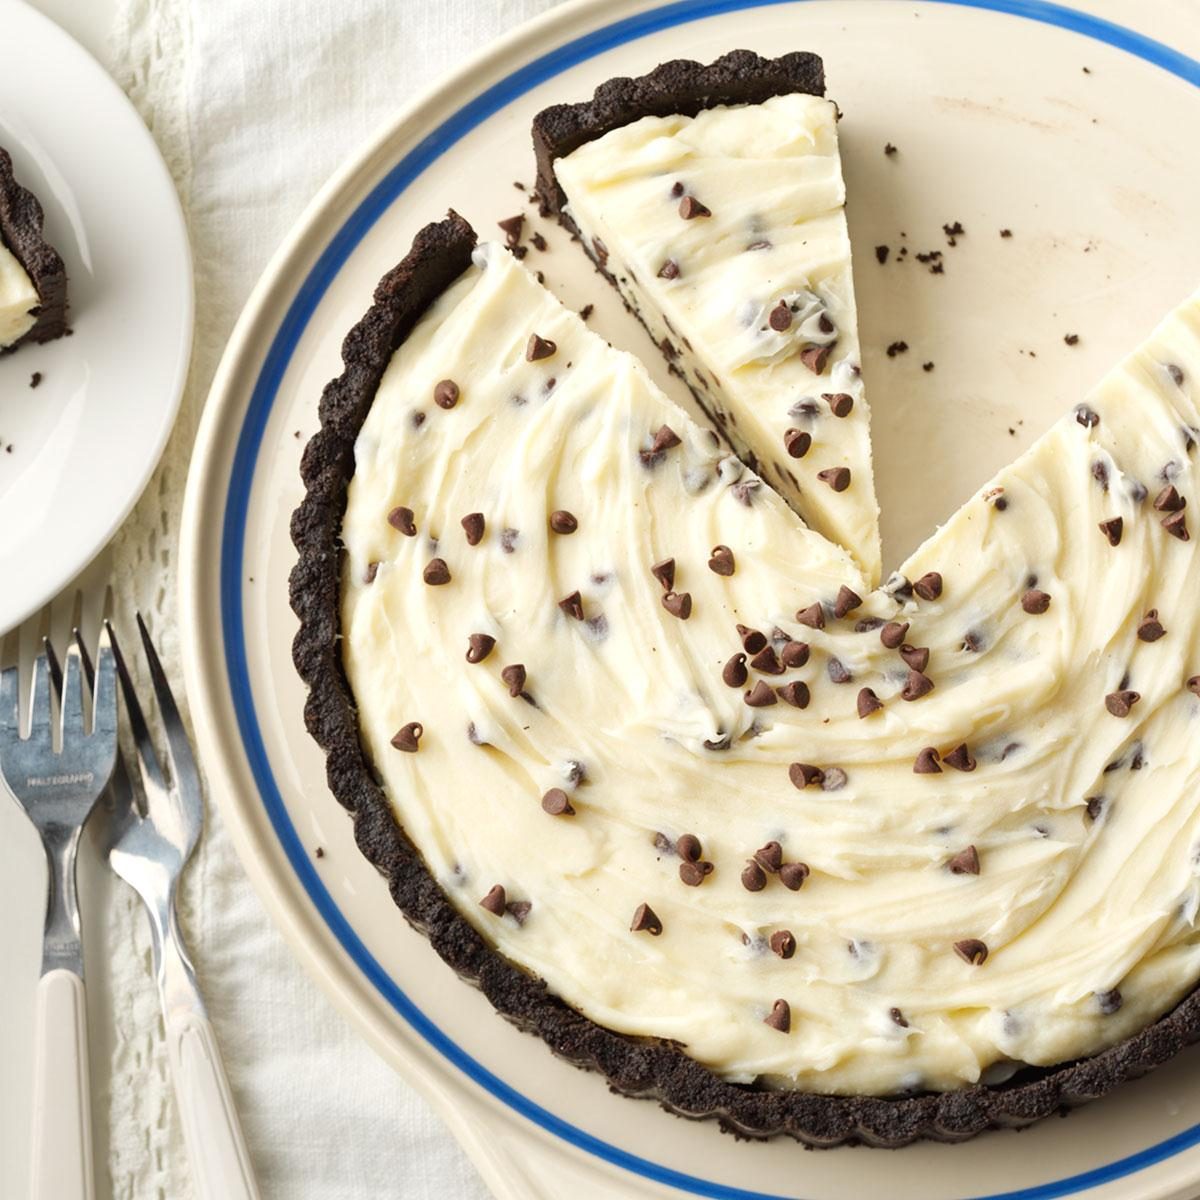 Frozen Chocolate Cheesecake Tart Recipe: How to Make It